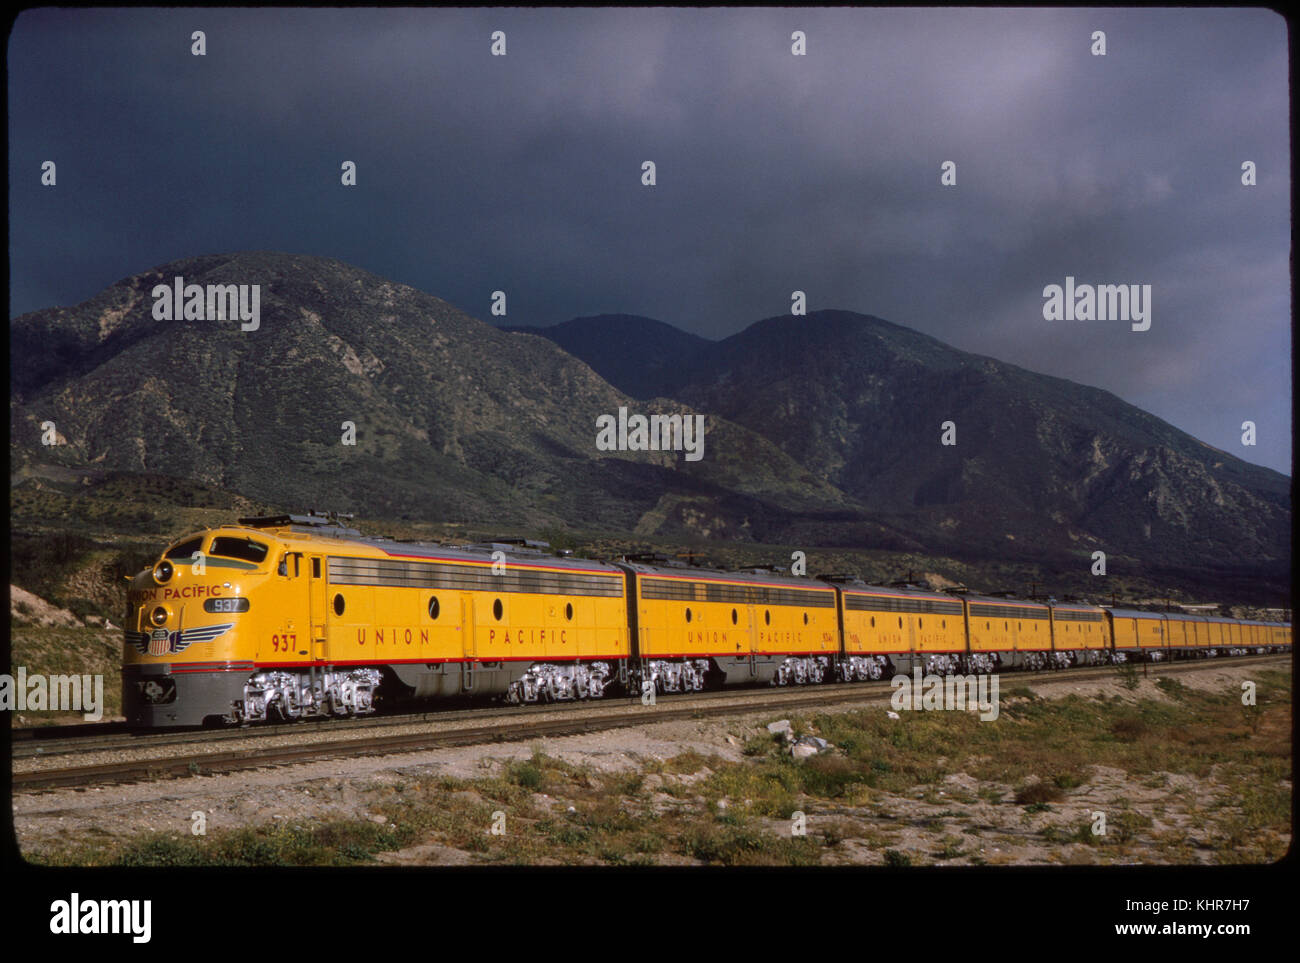 Union Pacific train locomotive diesel, cajon pass à cajon, California, USA, 1964 Banque D'Images